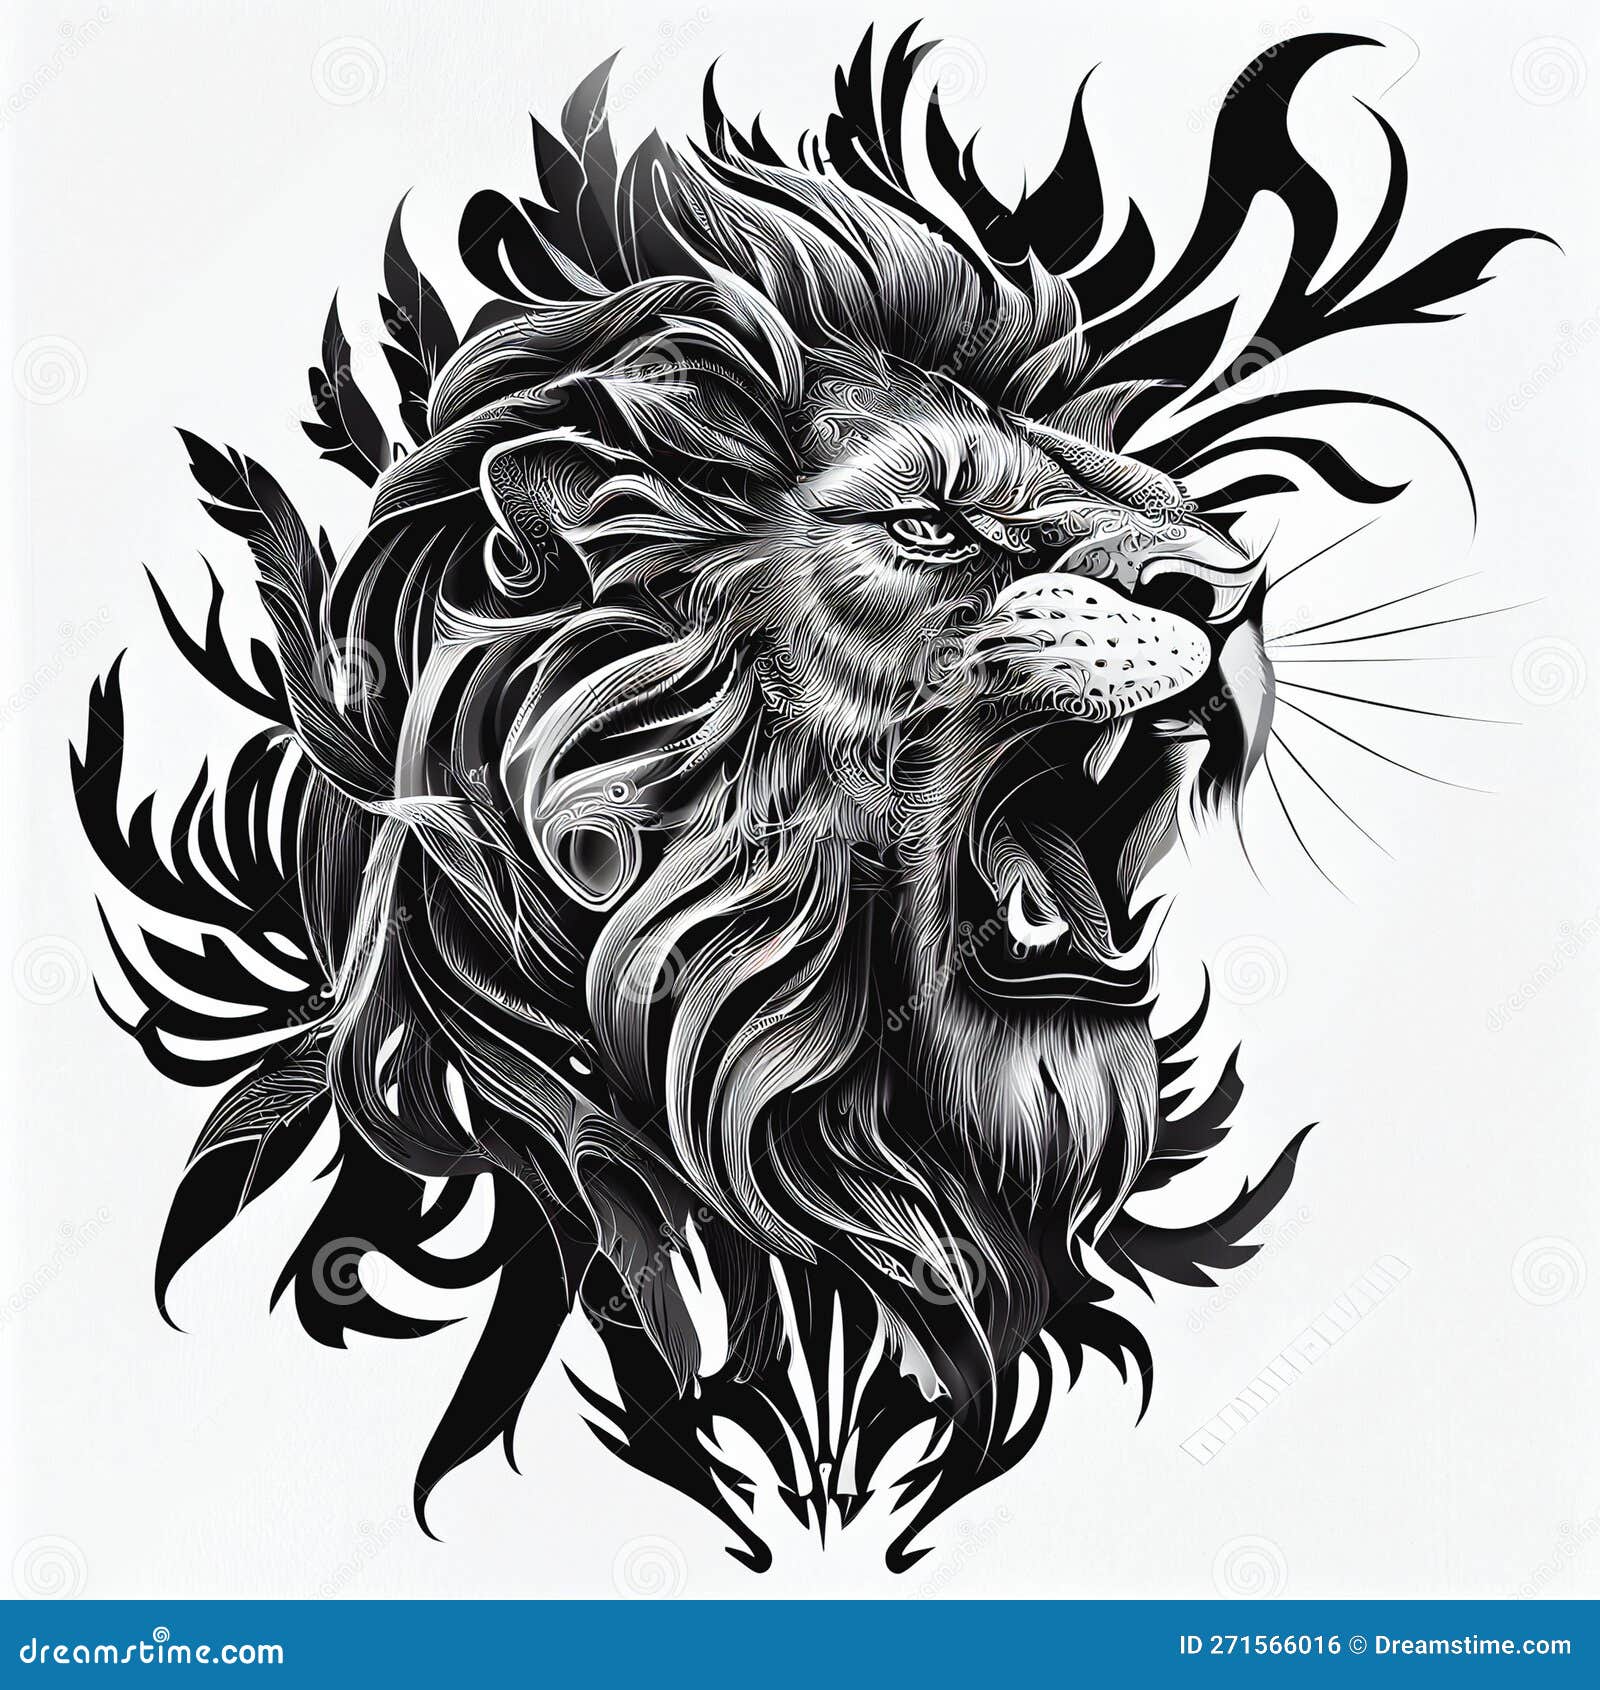 Tribal lion HD wallpapers | Pxfuel